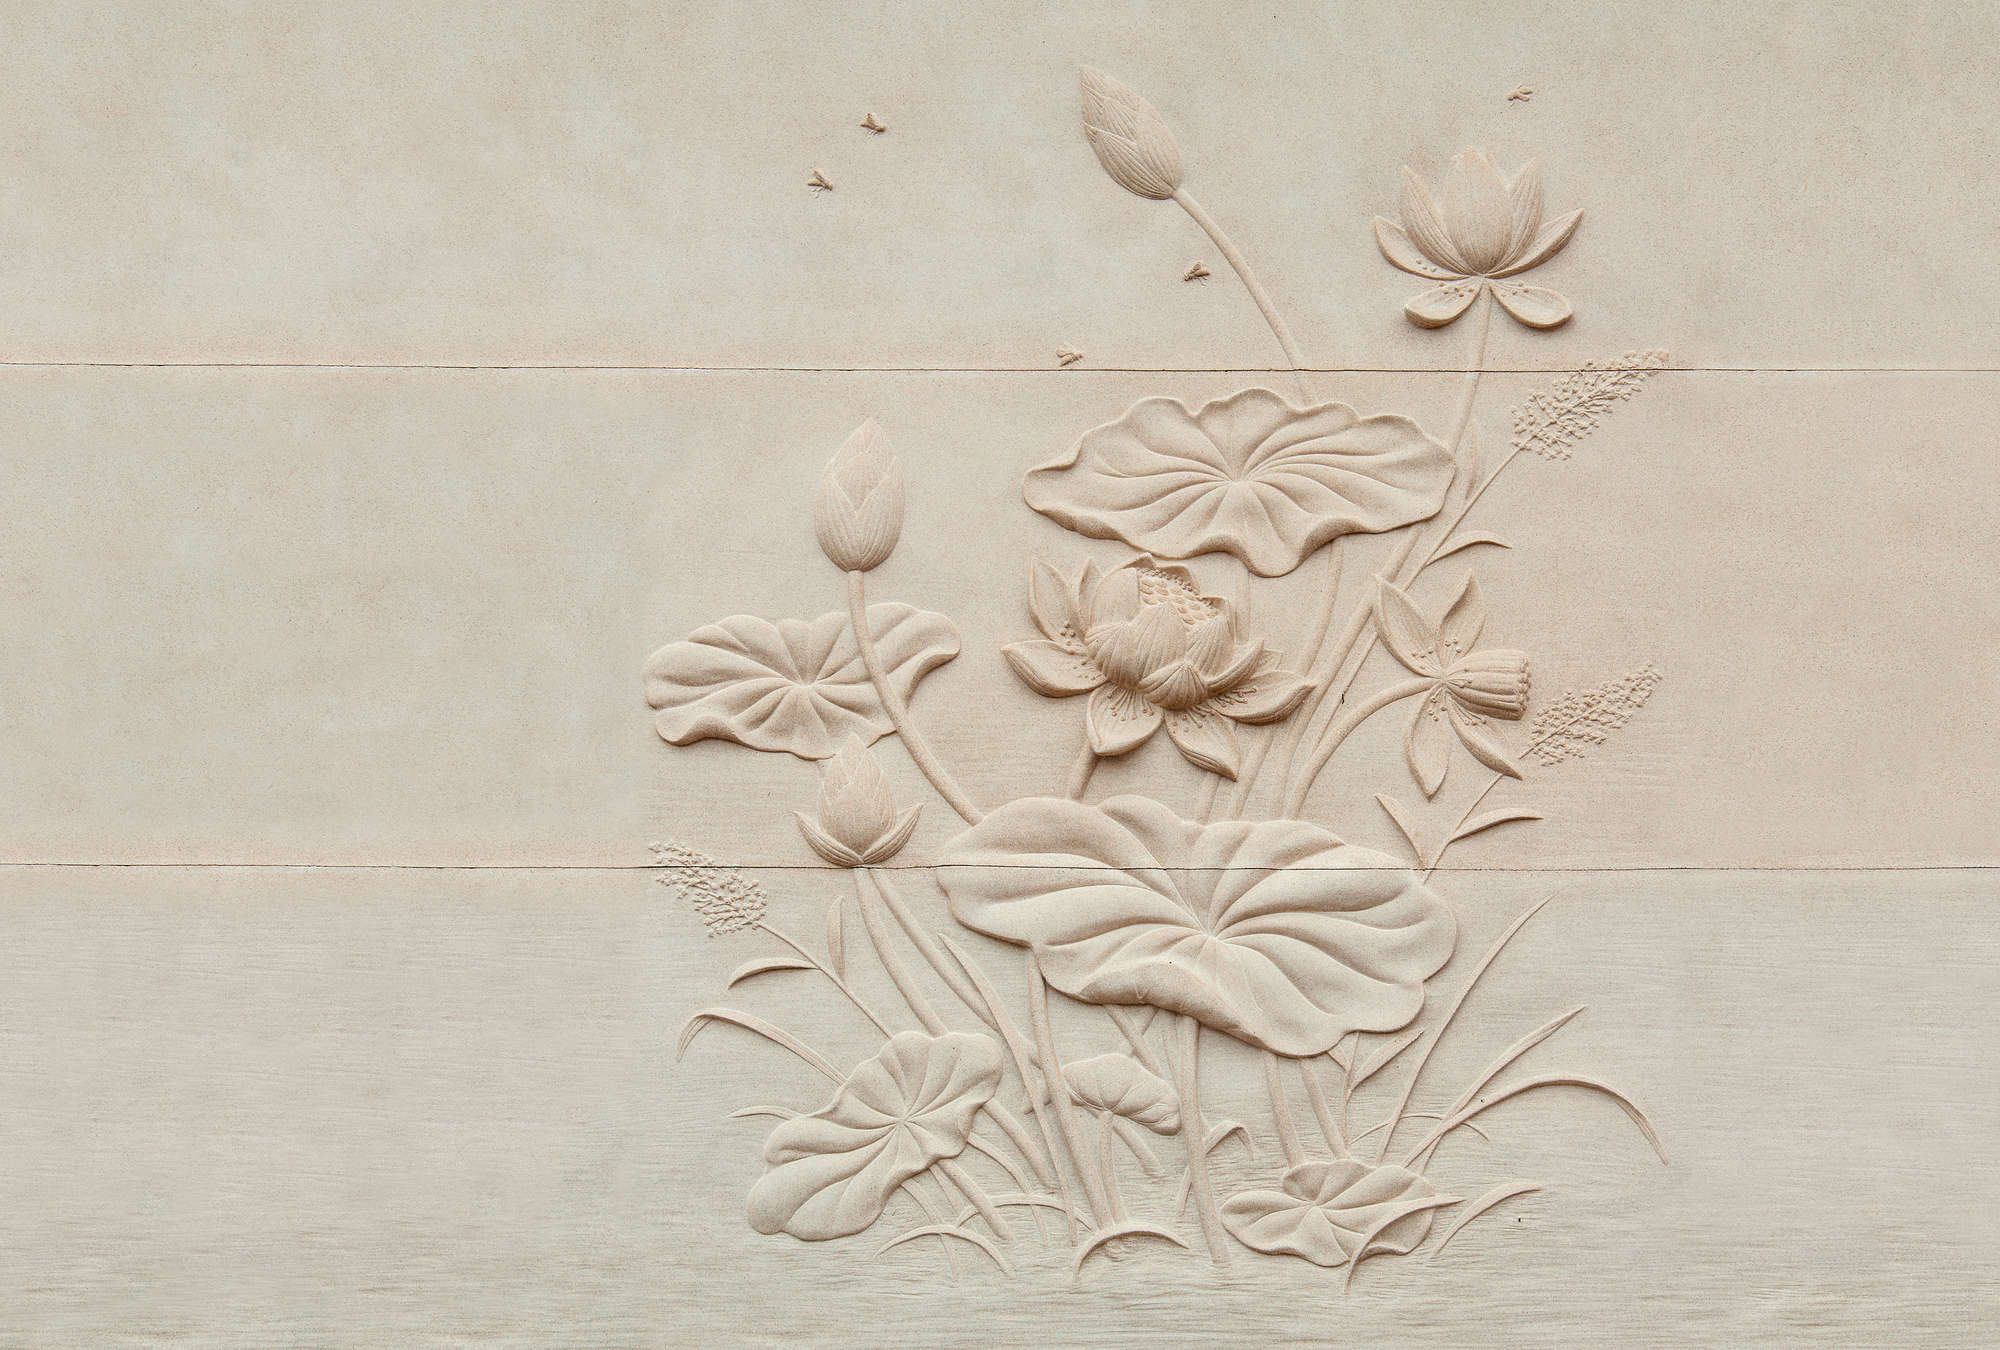             Fotomurali »fiore« - Rilievo floreale su struttura in cemento - Materiali non tessuto liscio e leggermente perlato
        